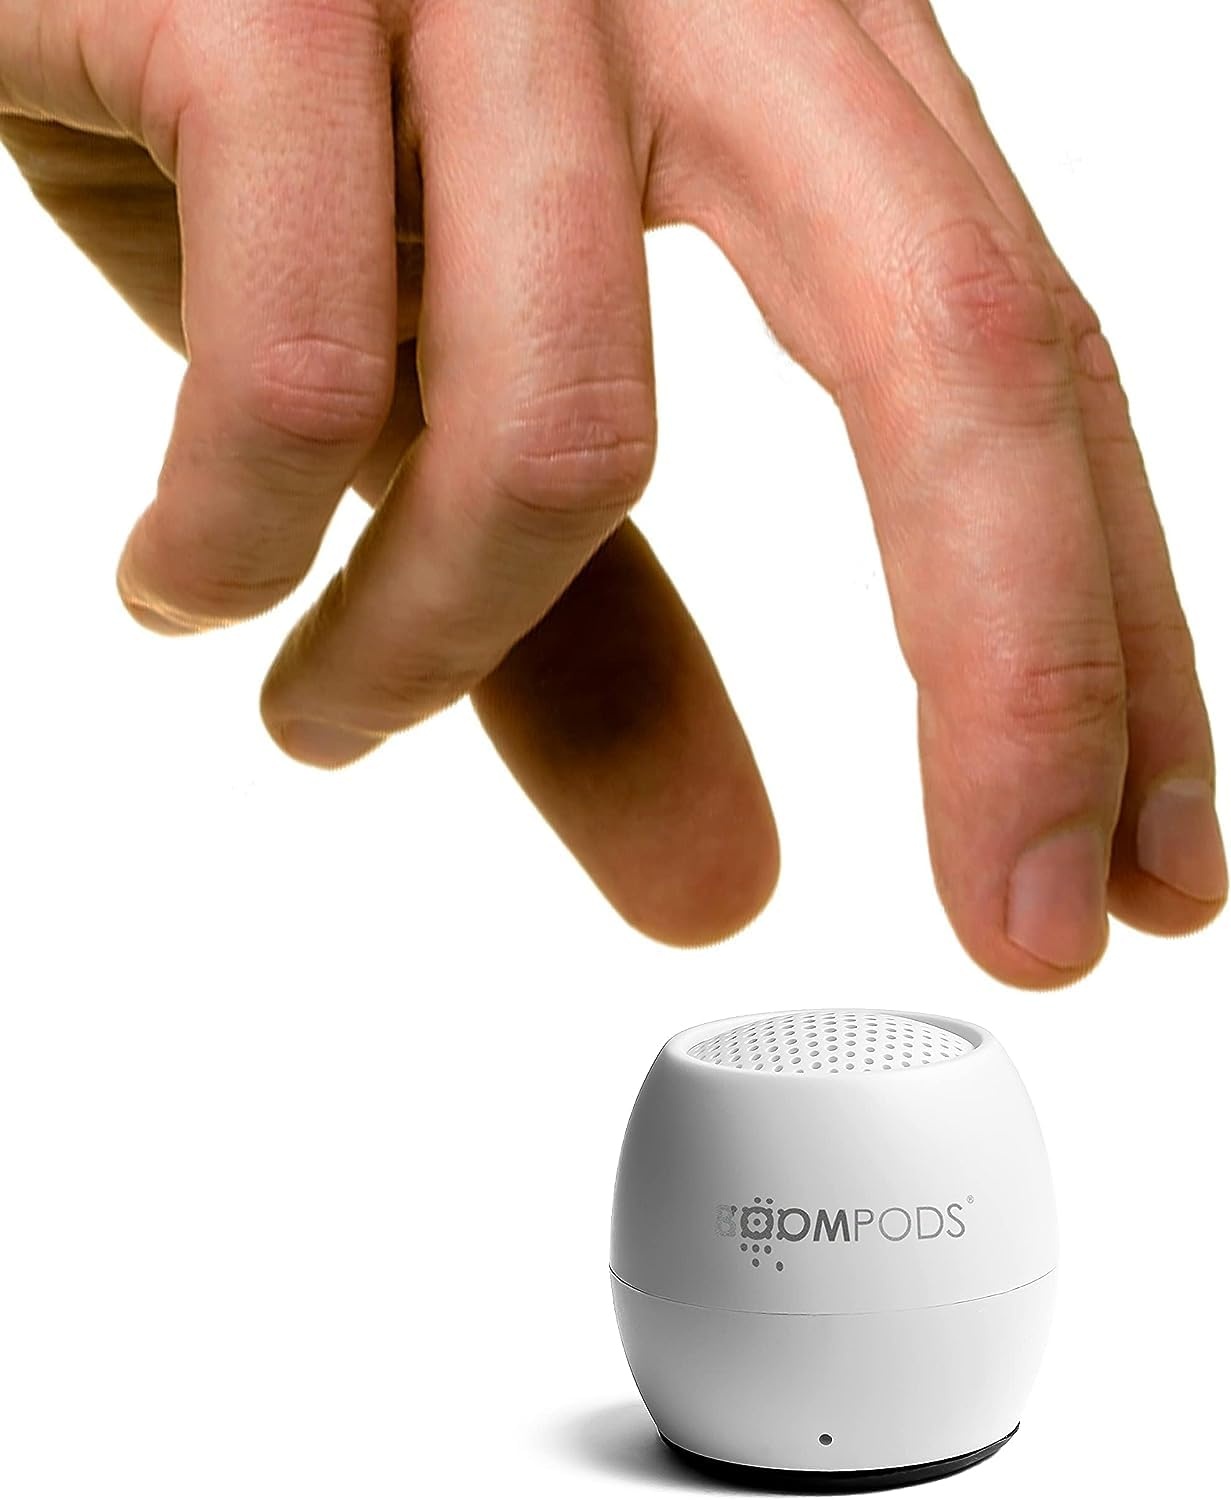 Boompods Zero Talk Mini tragbarer Bluetooth Lautsprecher mit Amazon Alexa - Outdoor klein, IPX6 wasserdicht, Mikrofon, 5 Std Spielzeit, Portable Speaker für Dusche, Reisen, Auto, Weiß